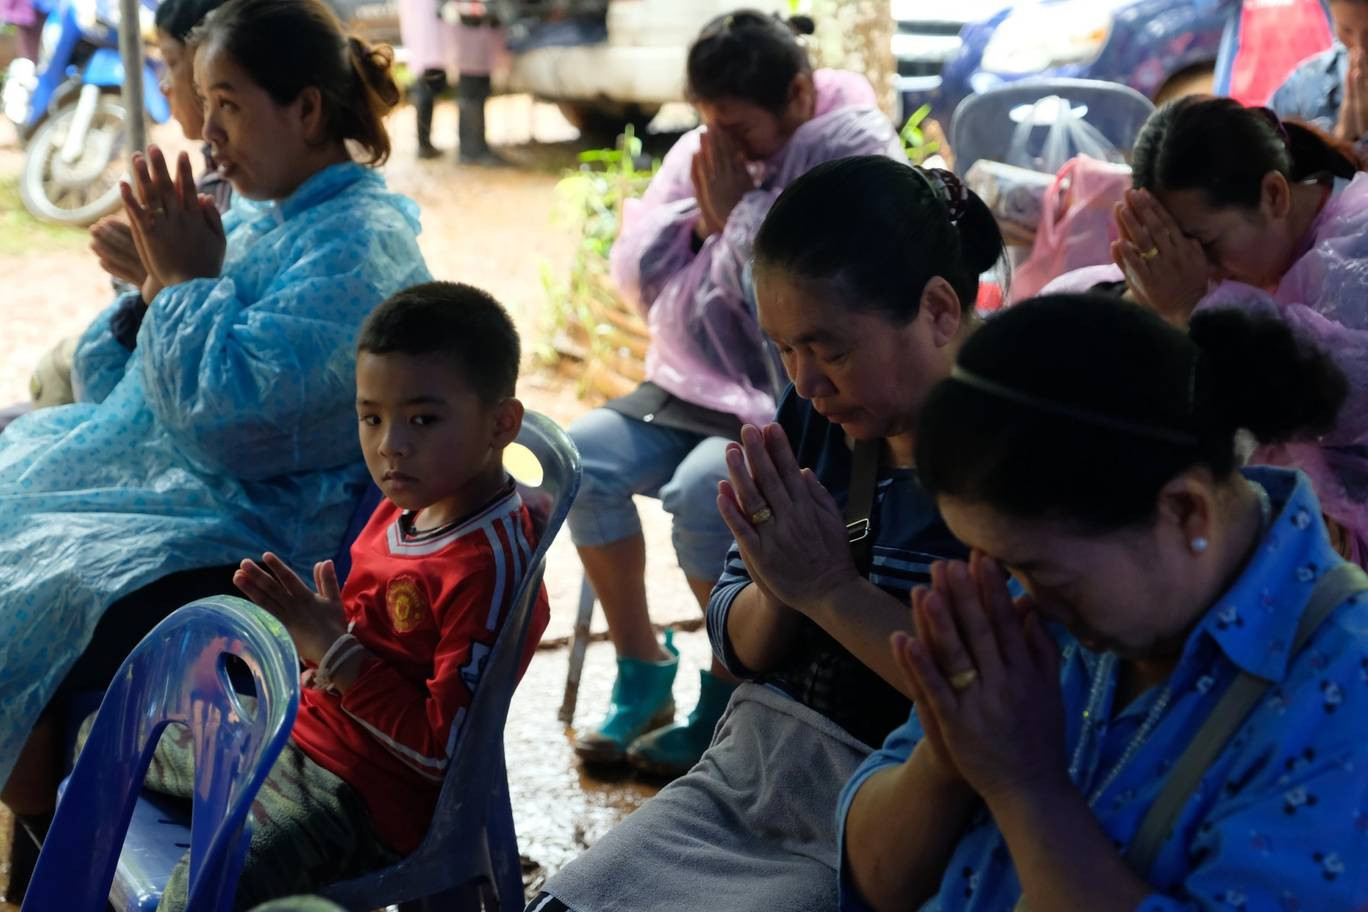 Trong những ngày qua, người dân Thái Lan không ngừng cầu nguyện cho đội bóng an toàn trở về. Và đến thời điểm này, cơ hội đưa những nạn nhân bị mắc kẹt trở về đang trong tầm kiểm soát.